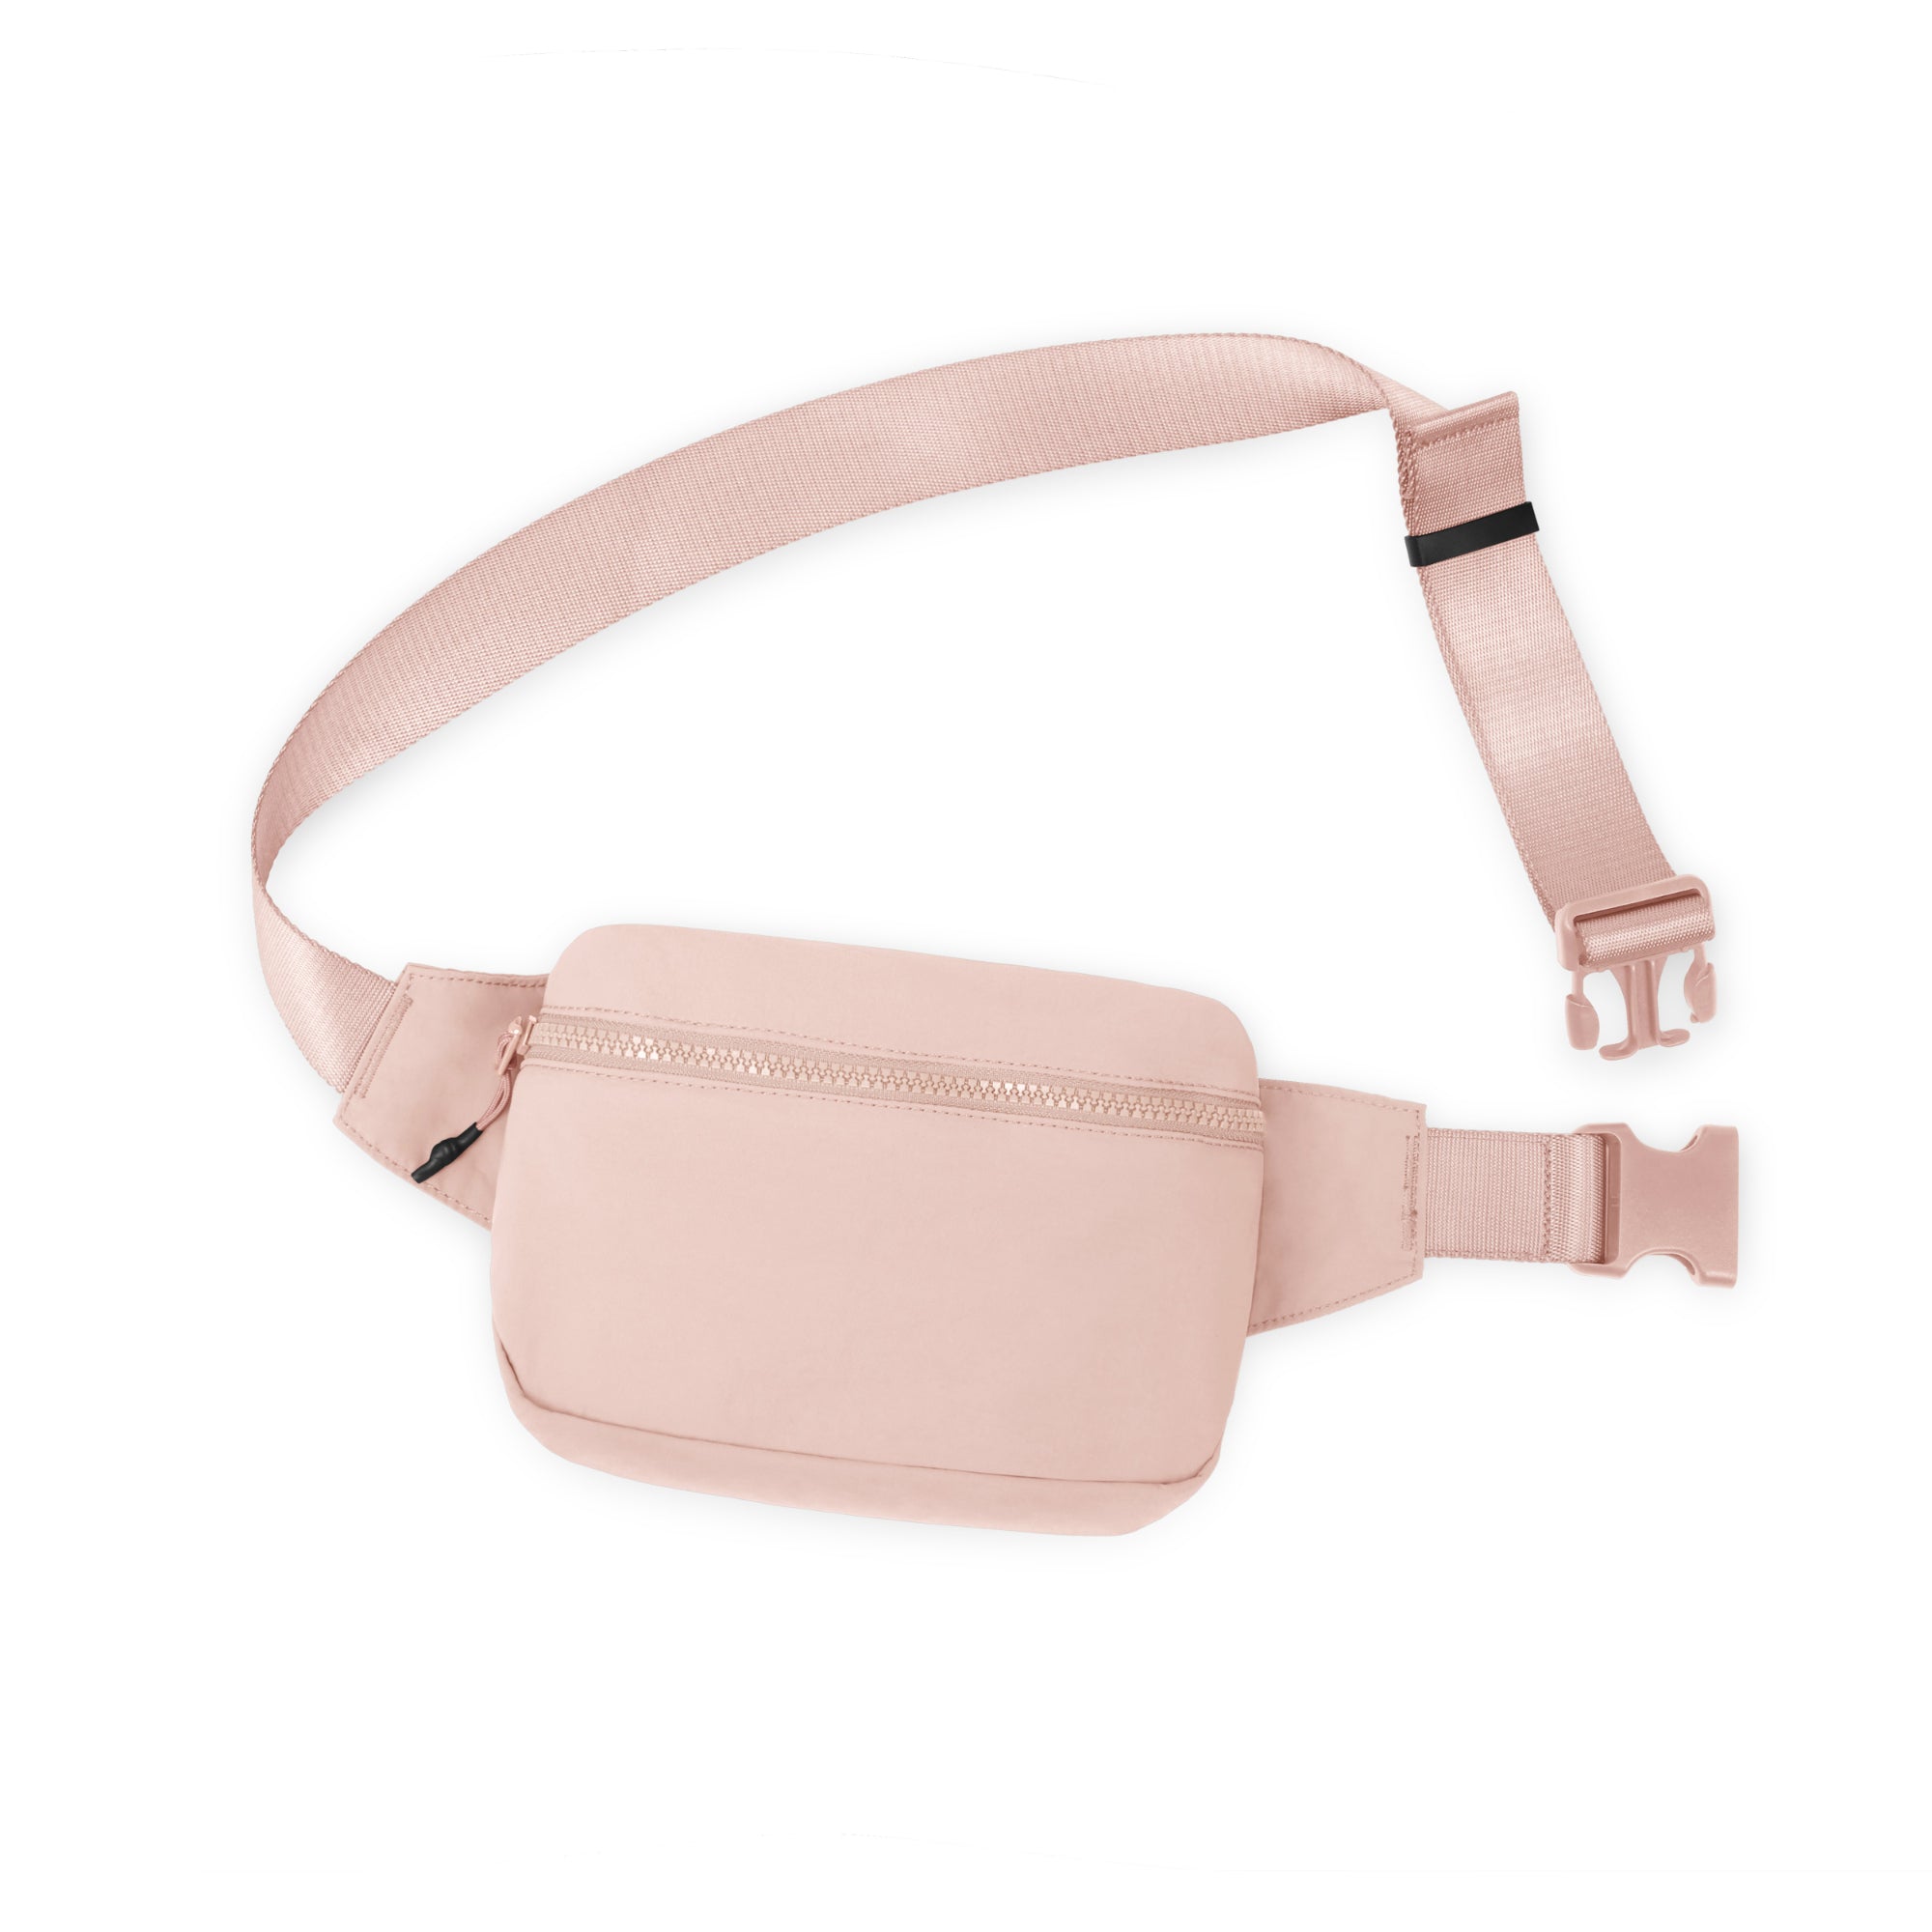 2L Belt Bag with Adjustable Strap Light Pink 8.5" x 5" x 2" - ododos